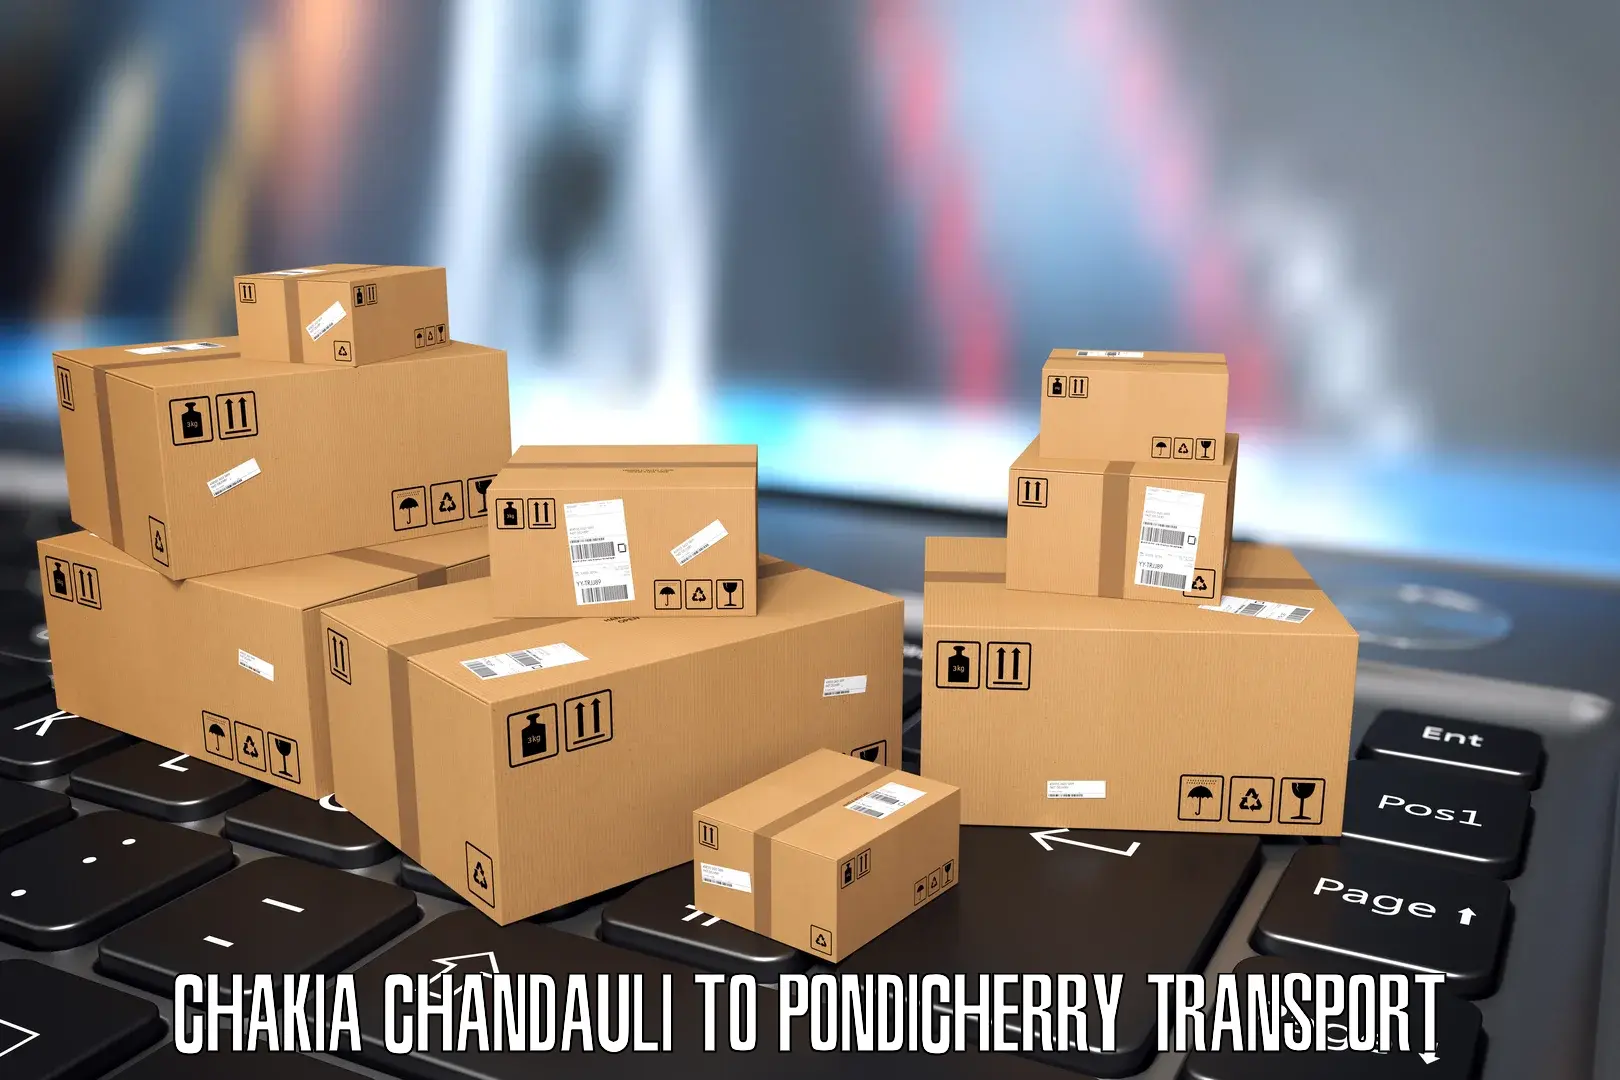 Pick up transport service Chakia Chandauli to NIT Puducherry